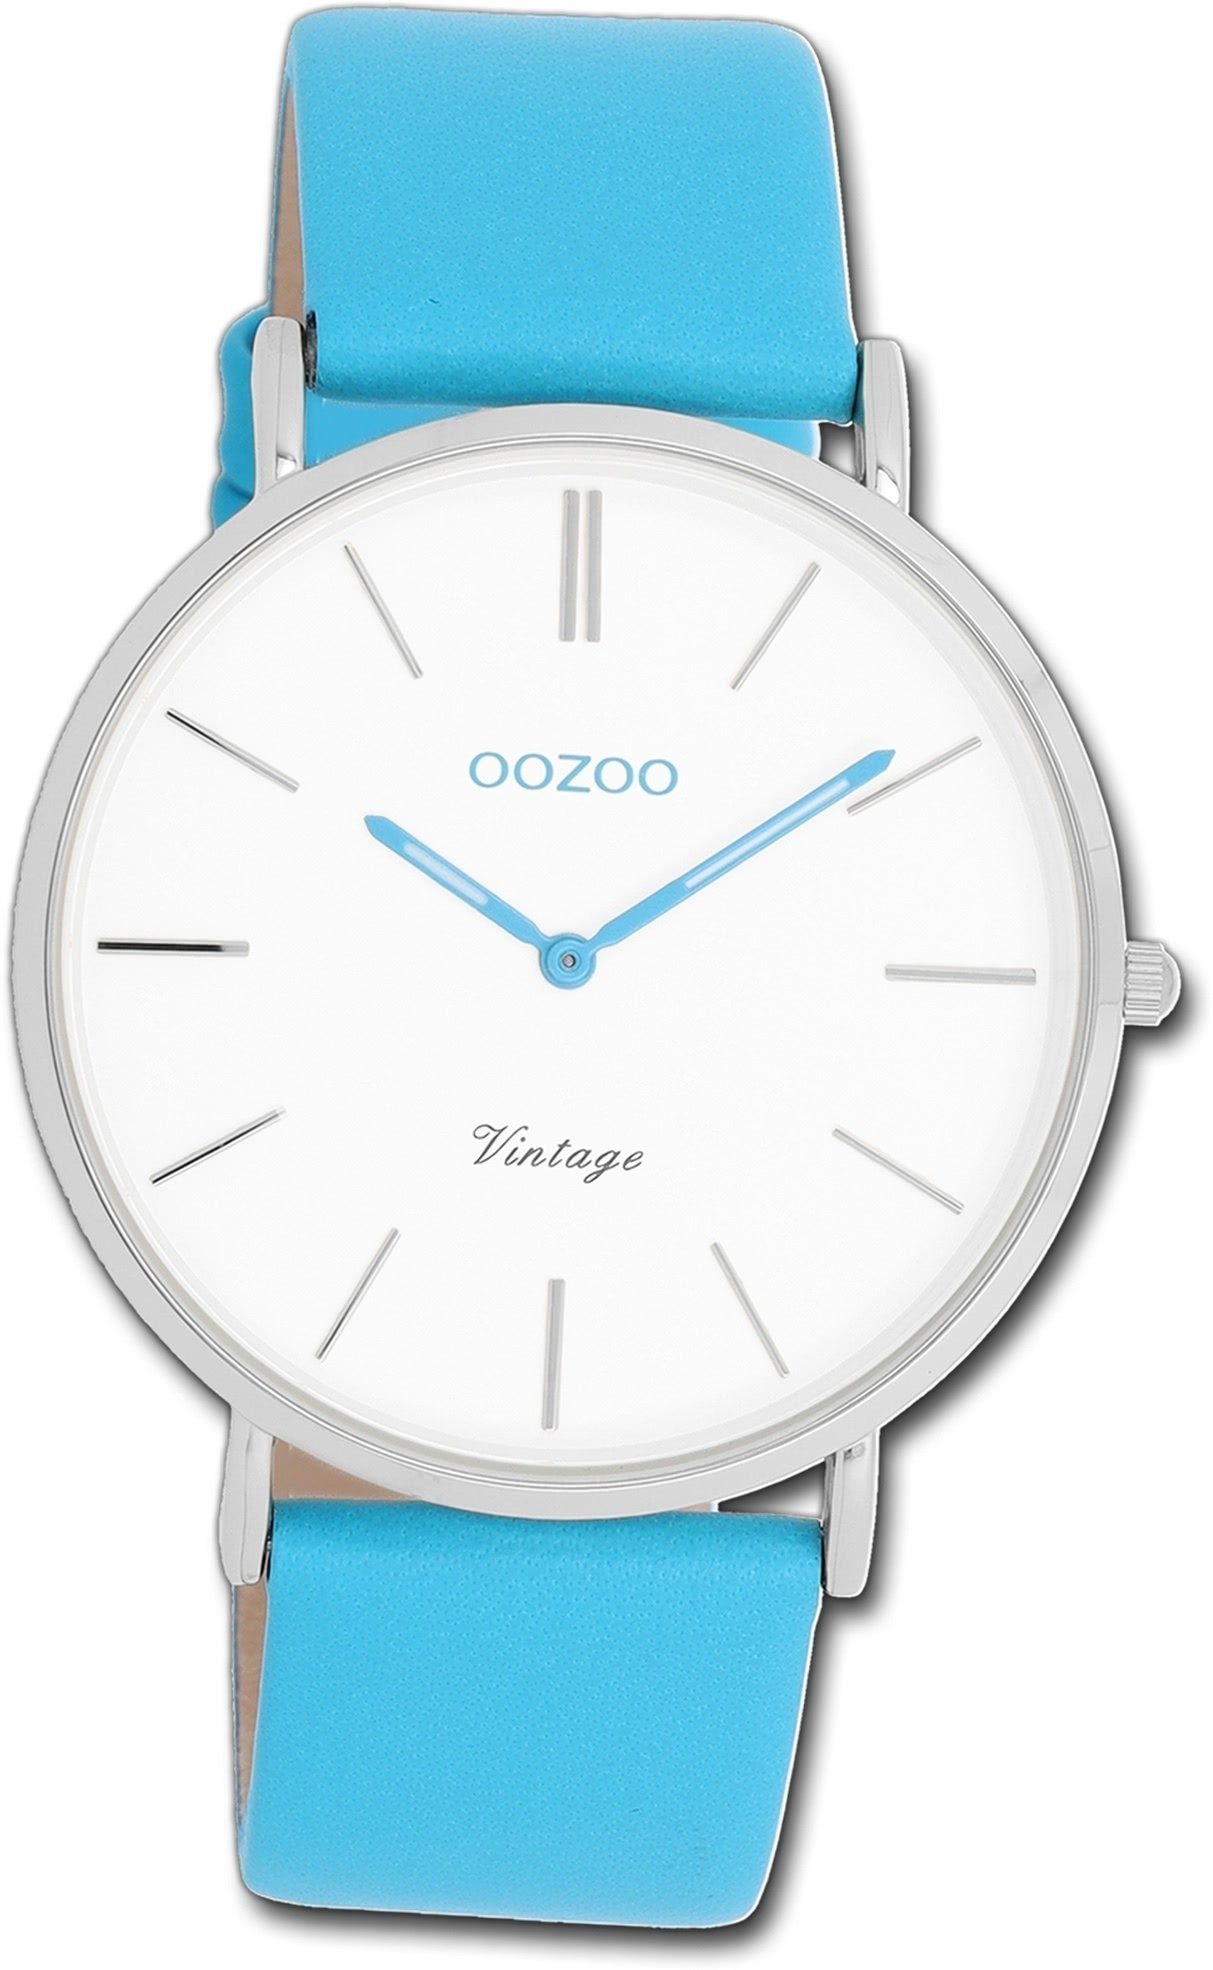 OOZOO Quarzuhr Oozoo Damen Armbanduhr Vintage hellblau, Damenuhr Lederarmband blau, rundes Gehäuse, groß (ca. 40mm)